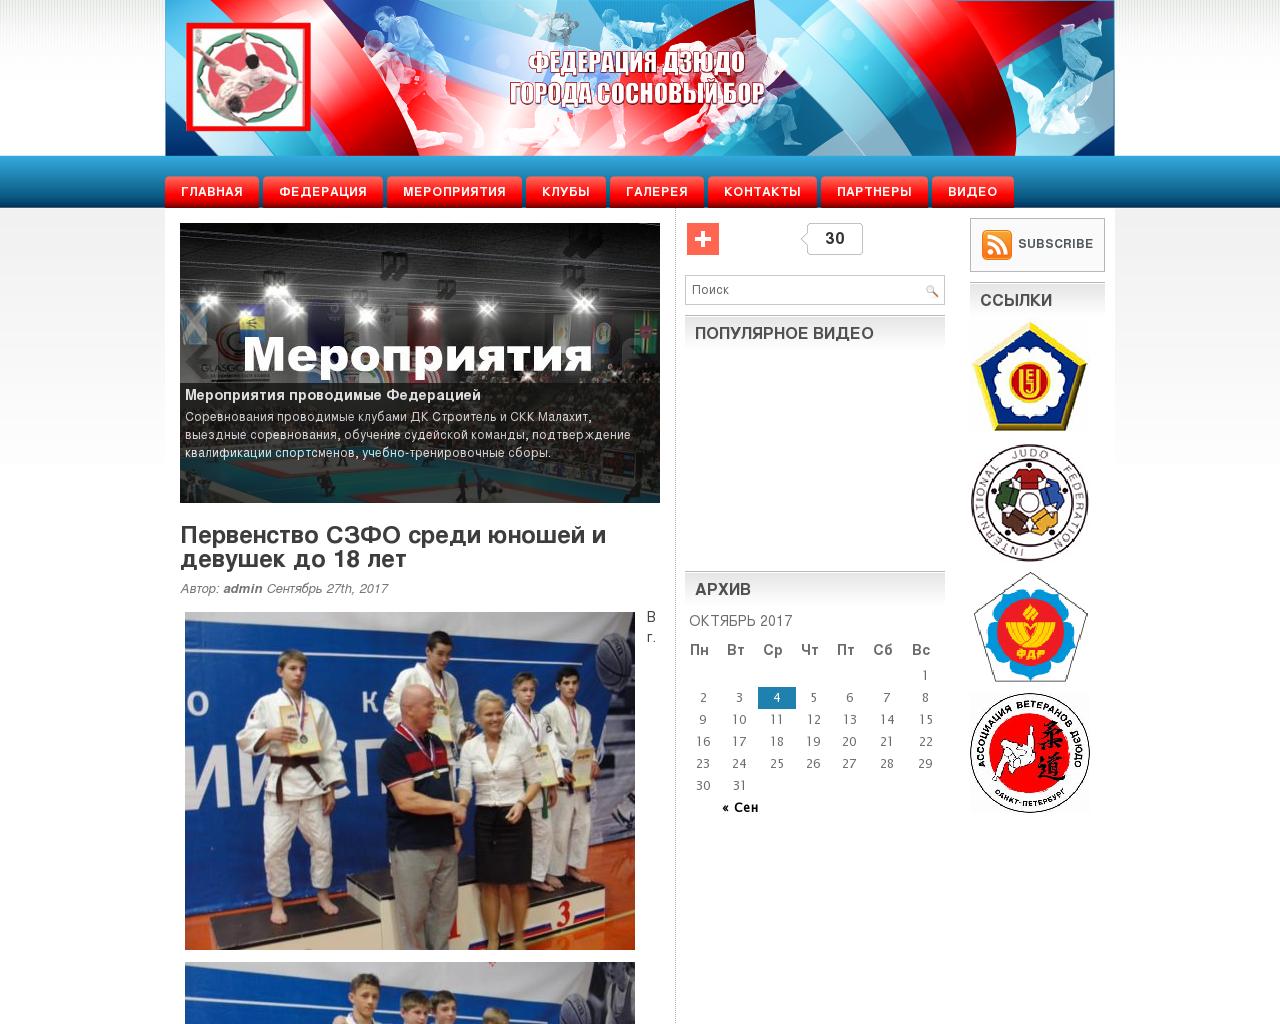 Изображение сайта sbor-judo.ru в разрешении 1280x1024